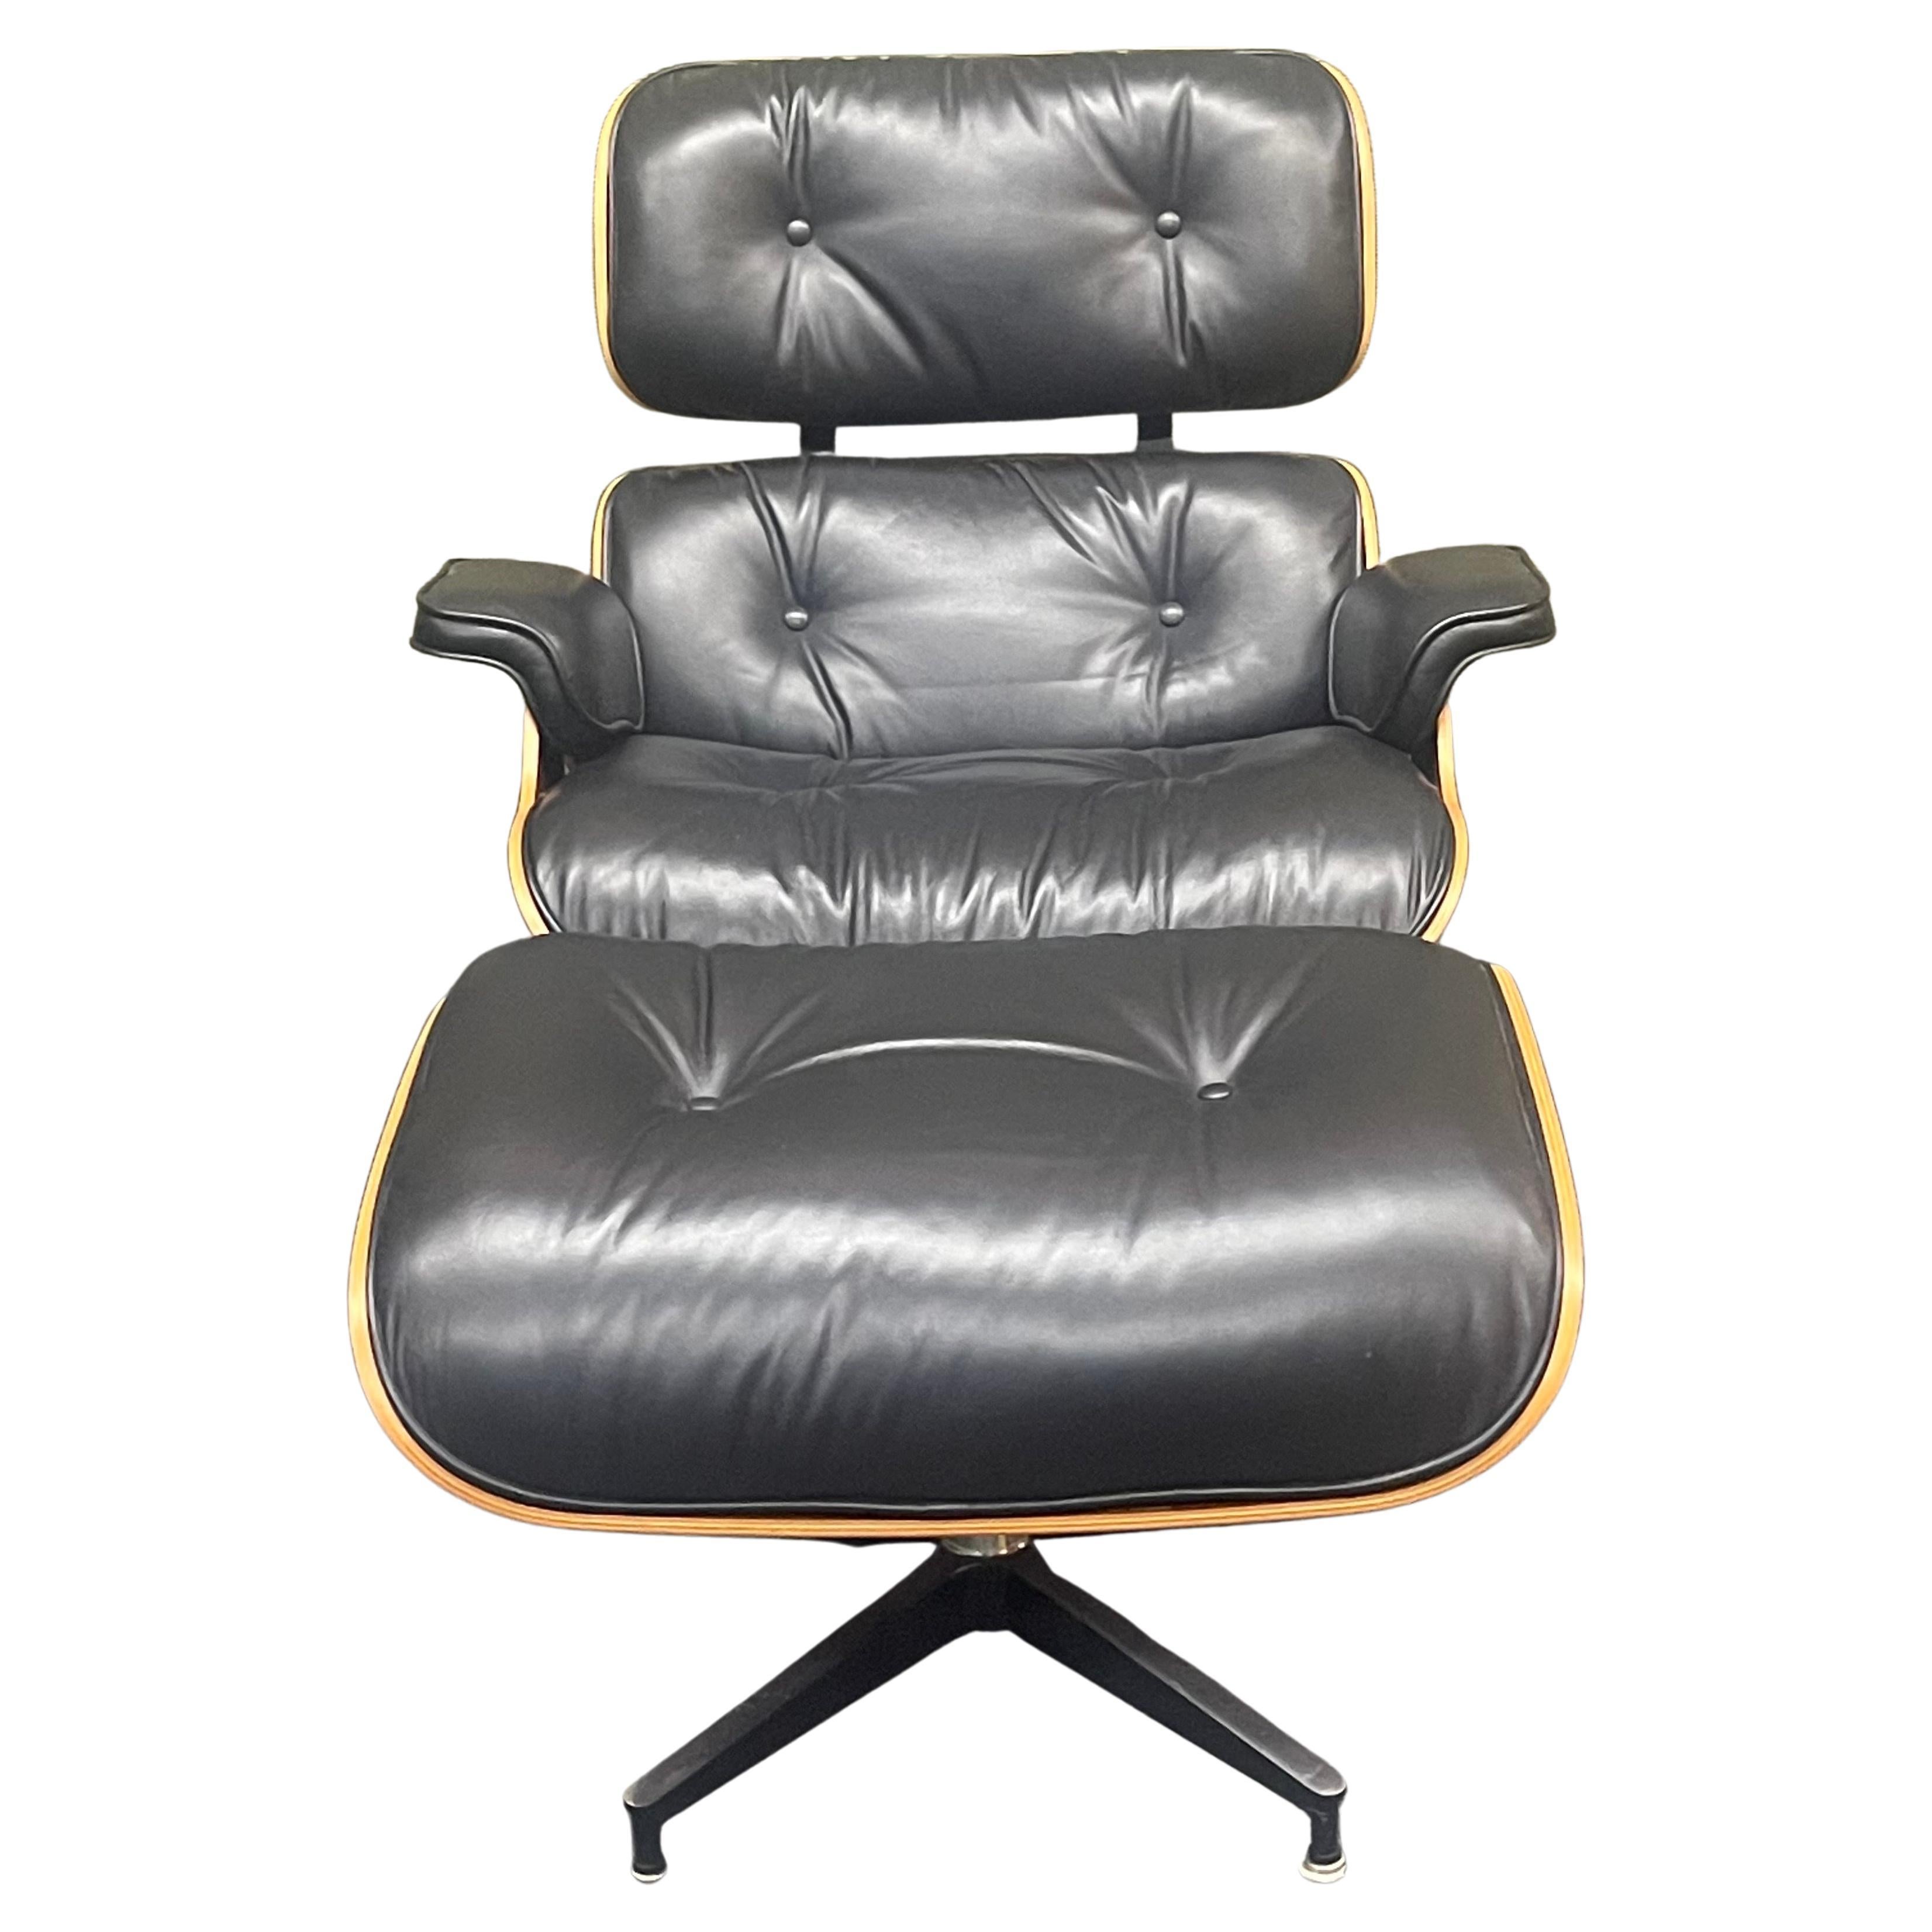 Authentique et iconique chaise de salon et ottoman Herman Miller / Eames en noyer et cuir noir (modèles 670 & 671), circa 2004. L'ensemble est légèrement usé et en bon état (à l'exception d'une petite éraflure sur le cuir de l'assise de la chaise).